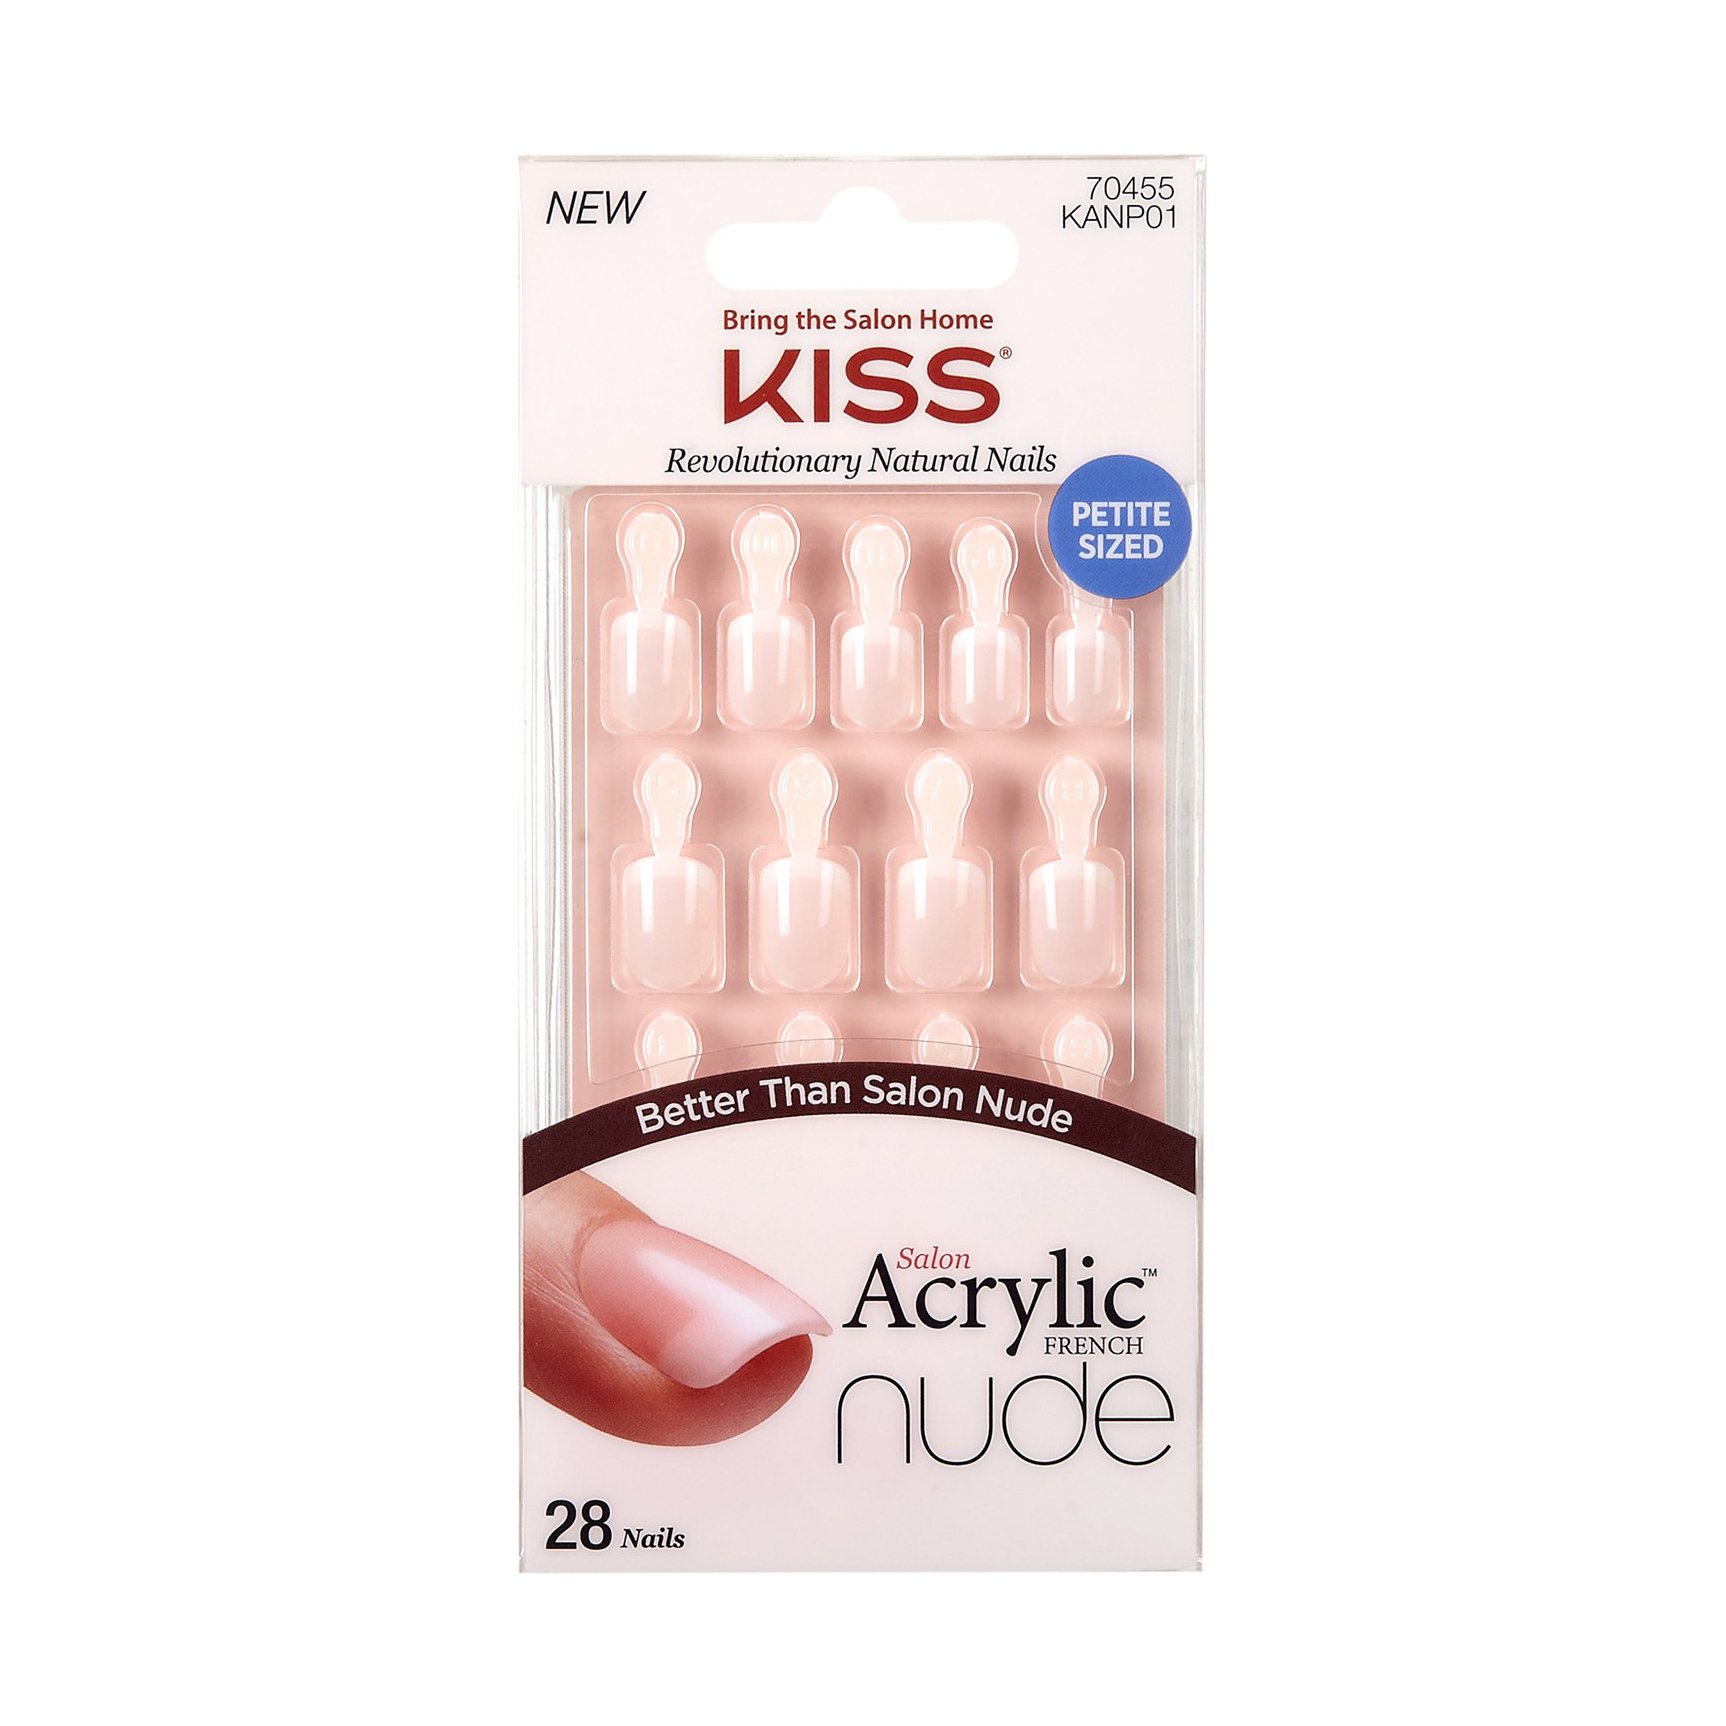 KISS Salon Acrylic French Nude Nails - Holla Back - Shop Nail Sets at H-E-B